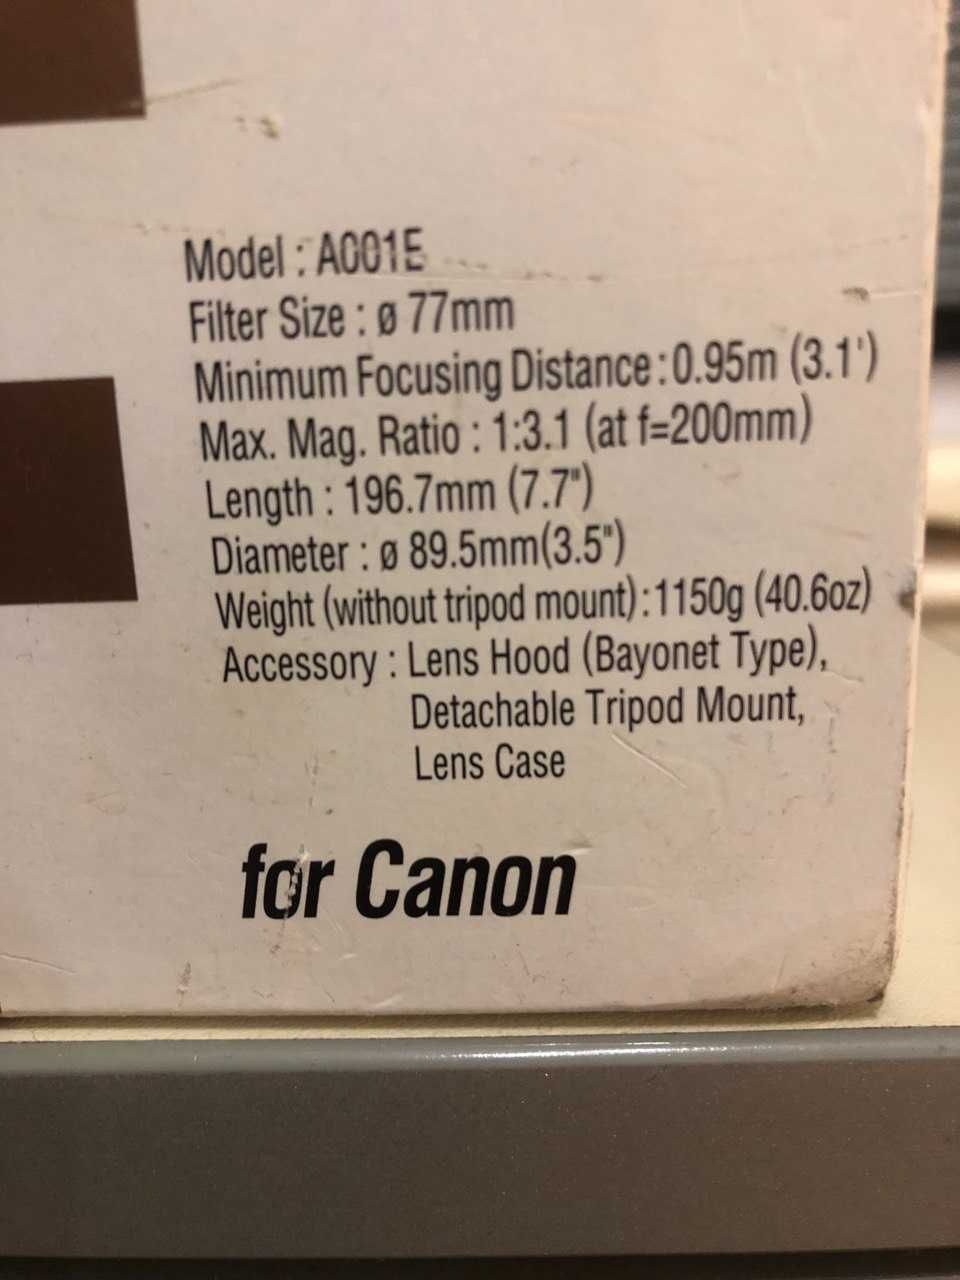 Tamron 70-200 f/2.8 Di LD (IF) Macro ! Для Canon (или обмен)